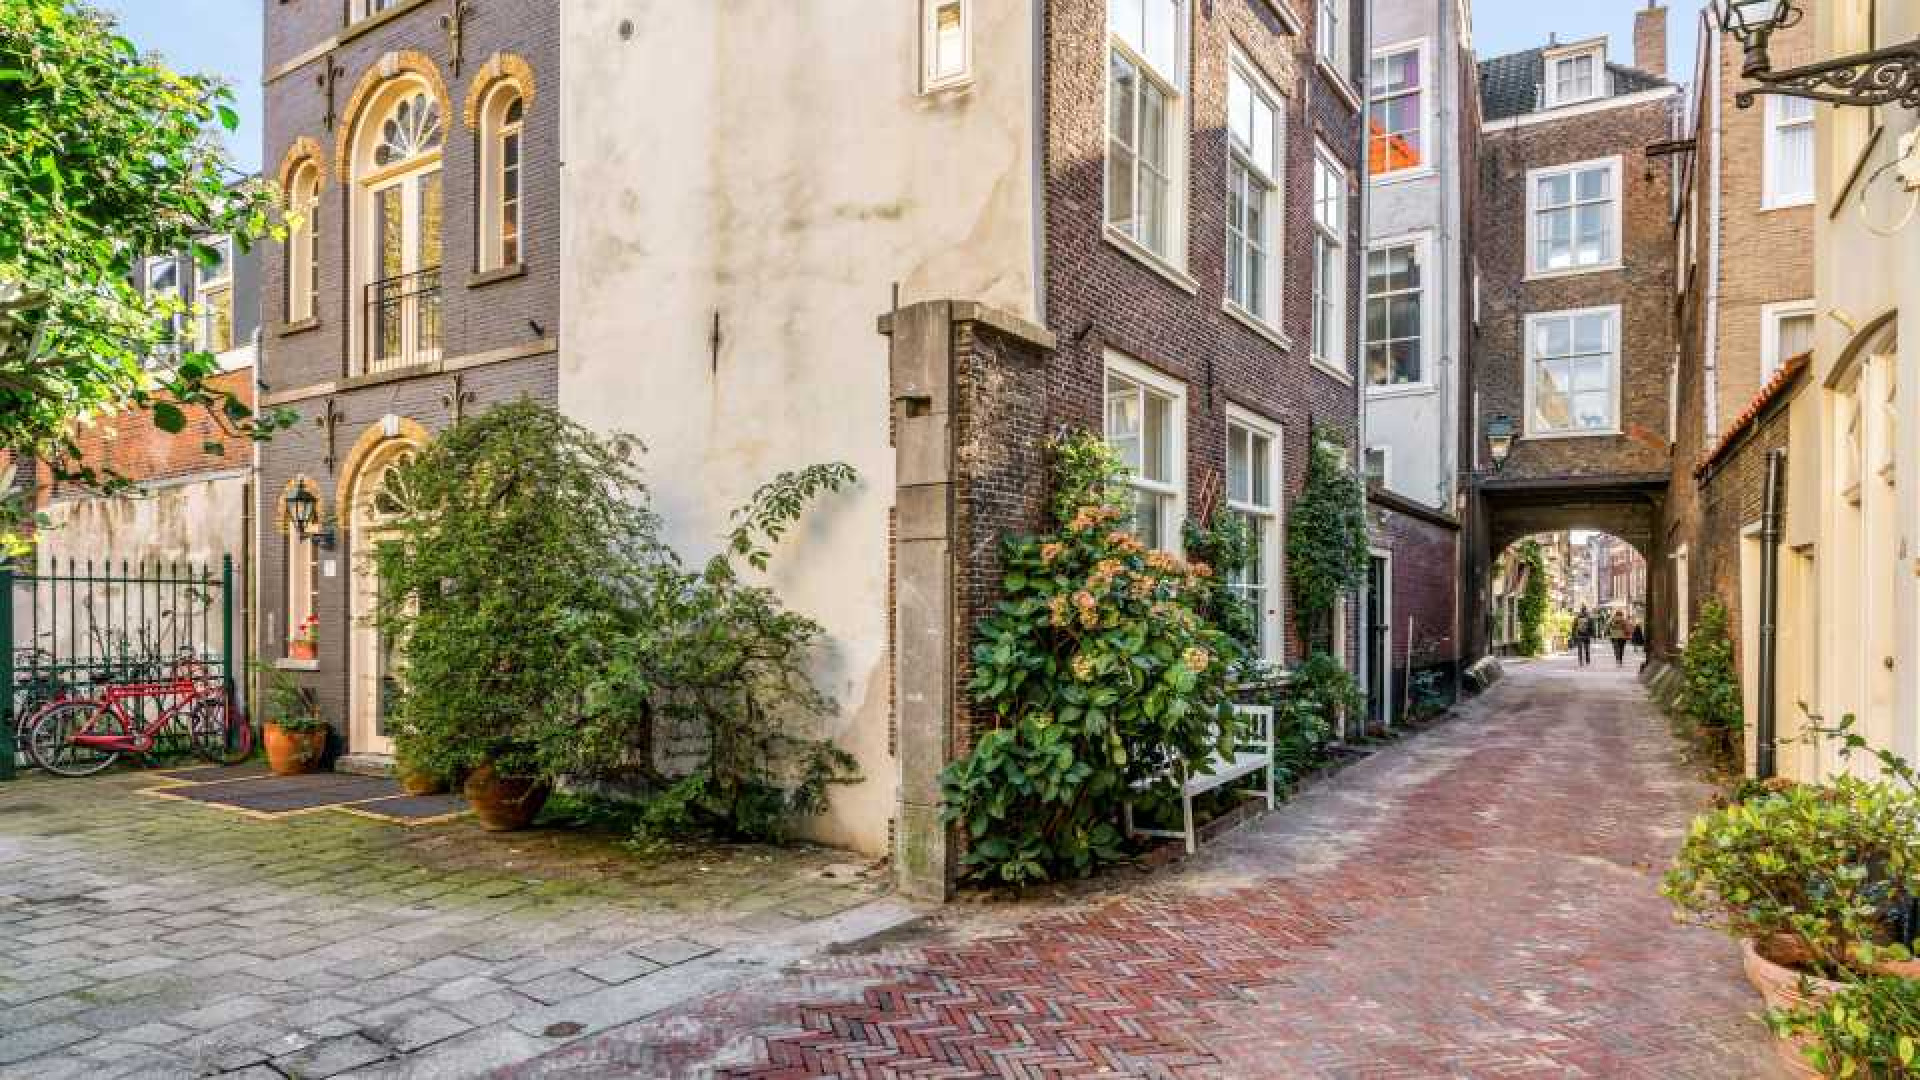 Deze te koop staande woning staat in de paleistuin van koning Willem Alexander en koningin Maxima. Zie foto's 19